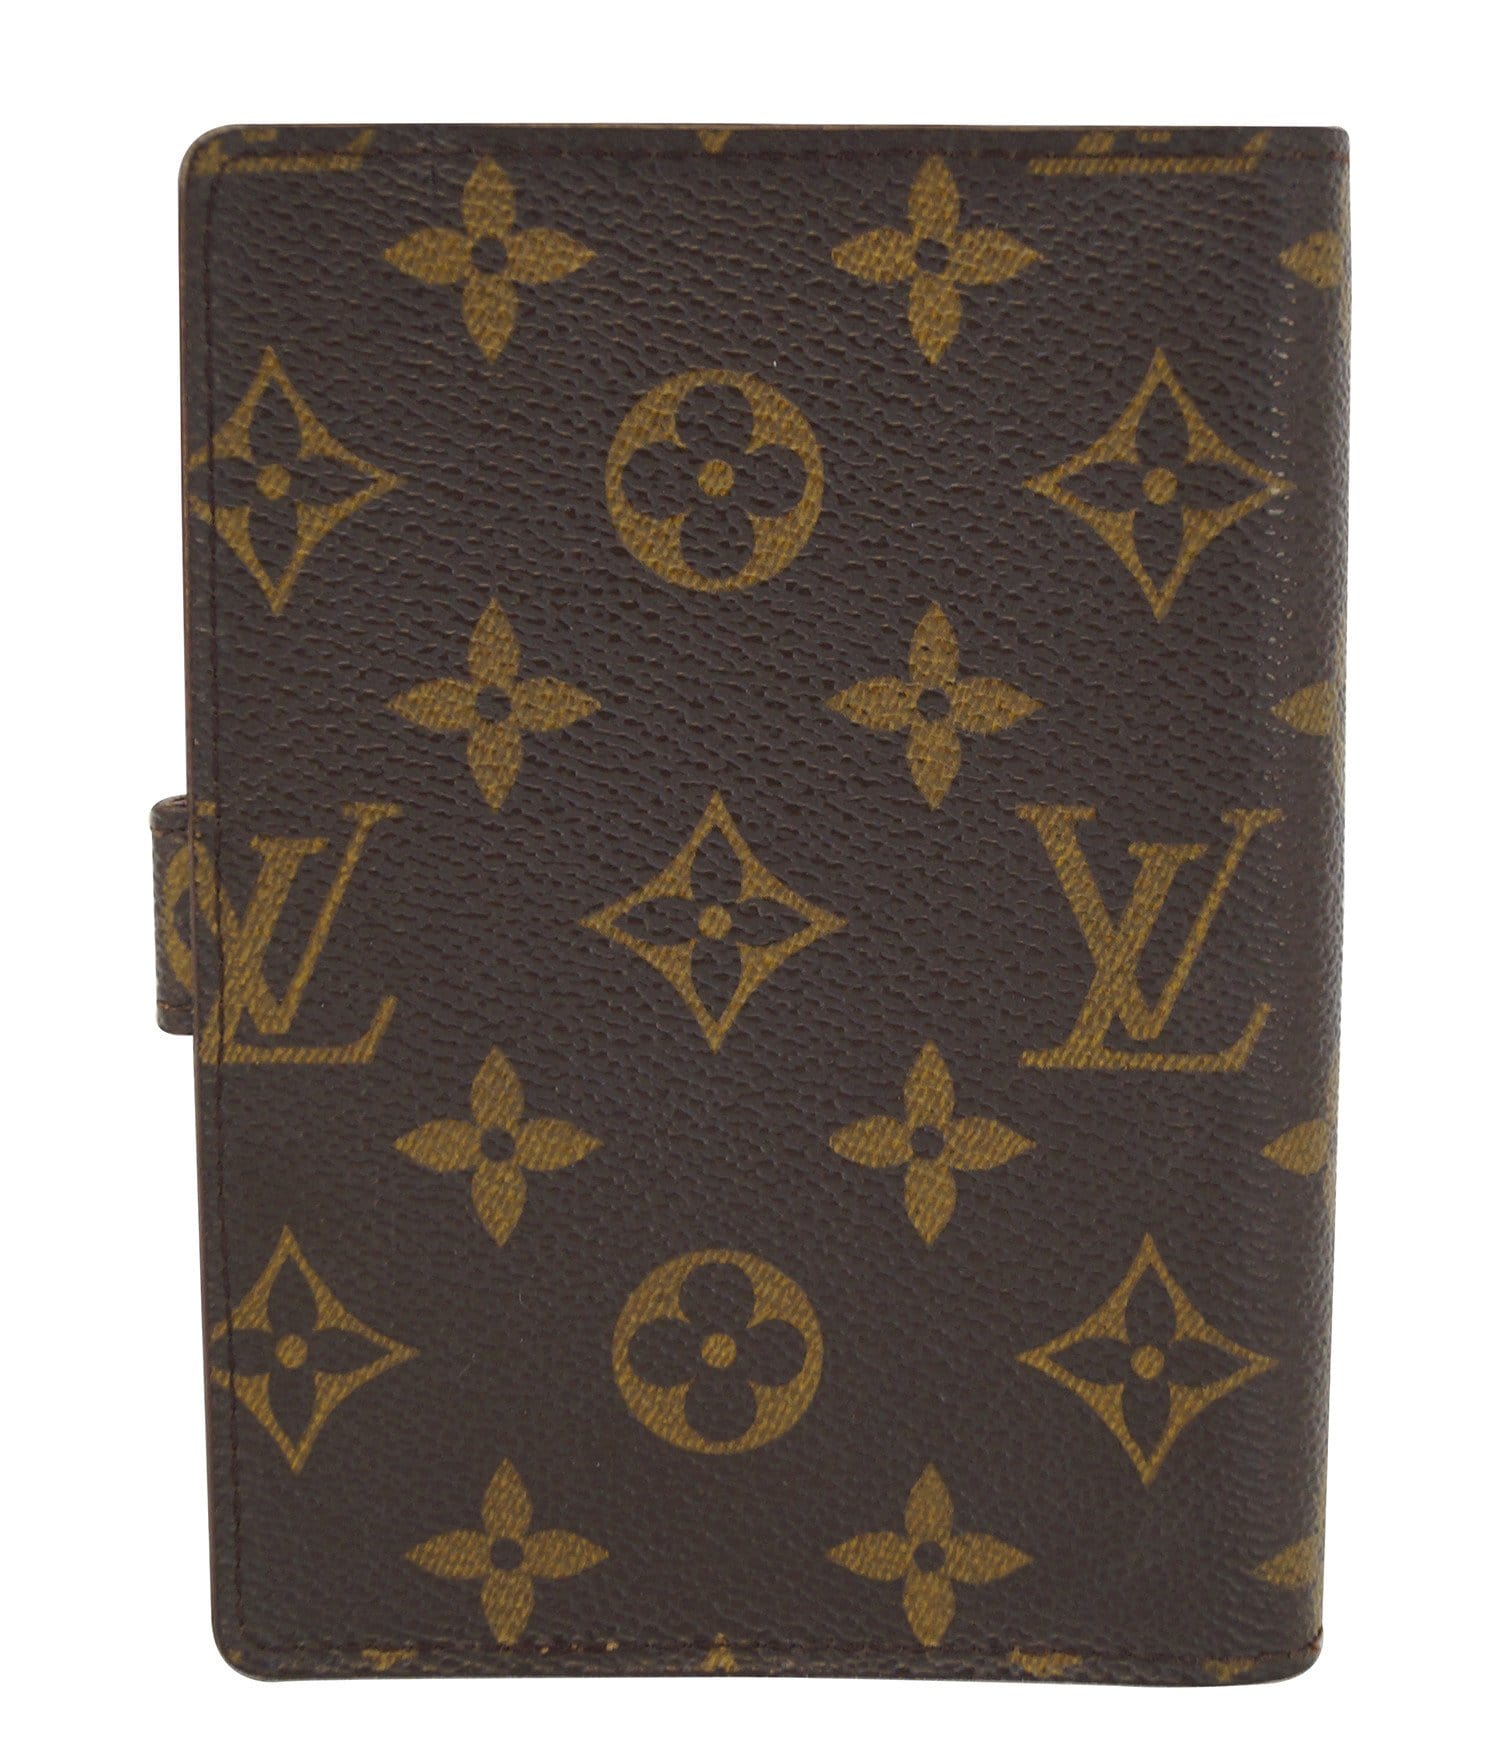 Louis Vuitton Diary 